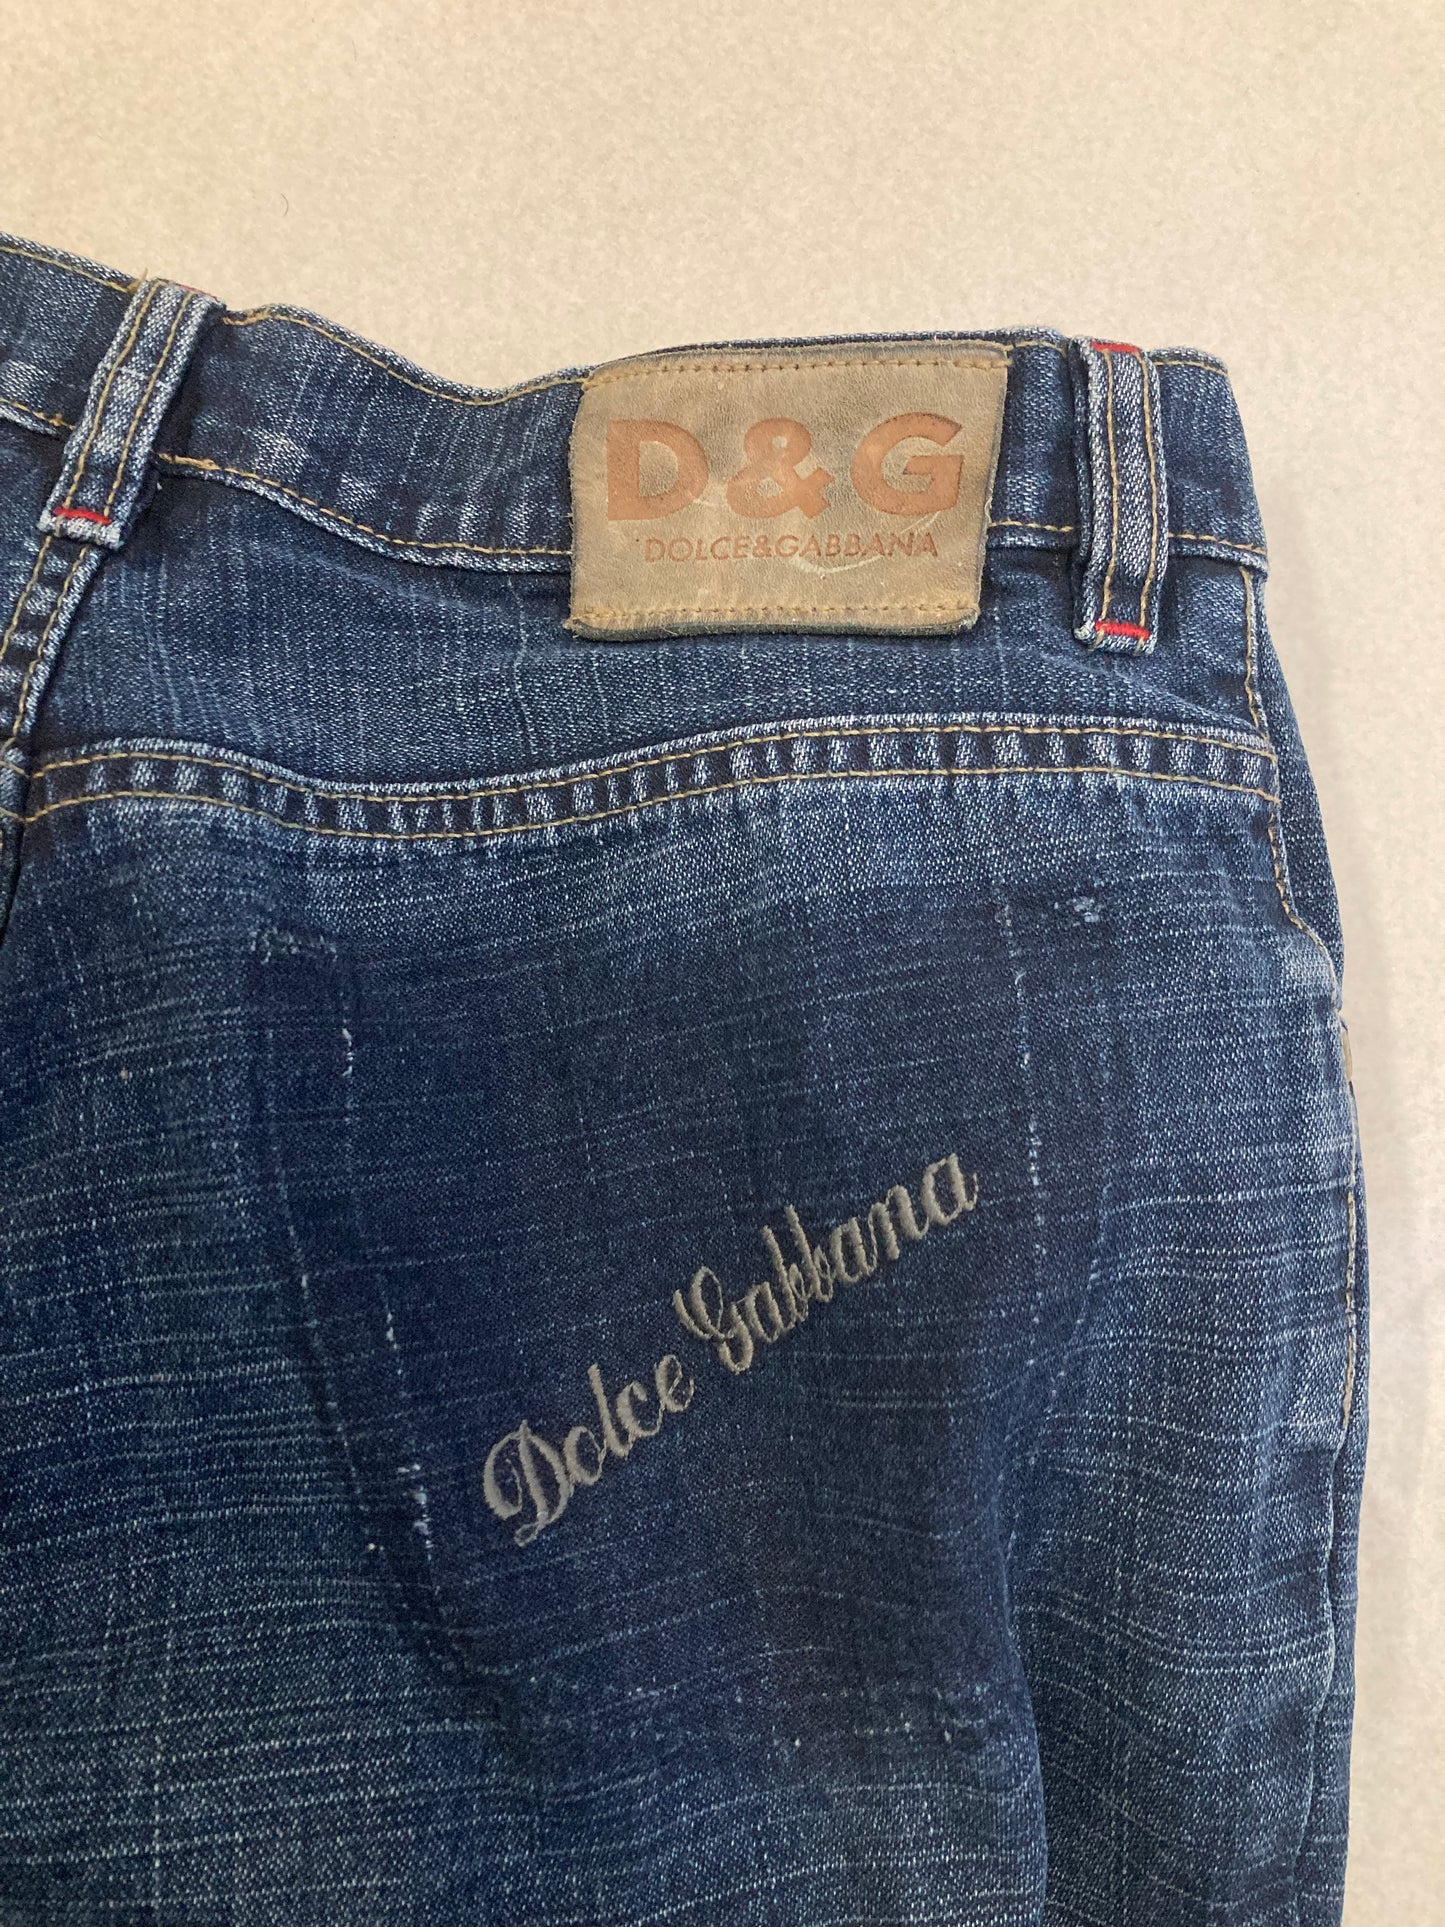 Pantalones Dolce & Gabbana Embroidered Pocket 00s Vintage - M